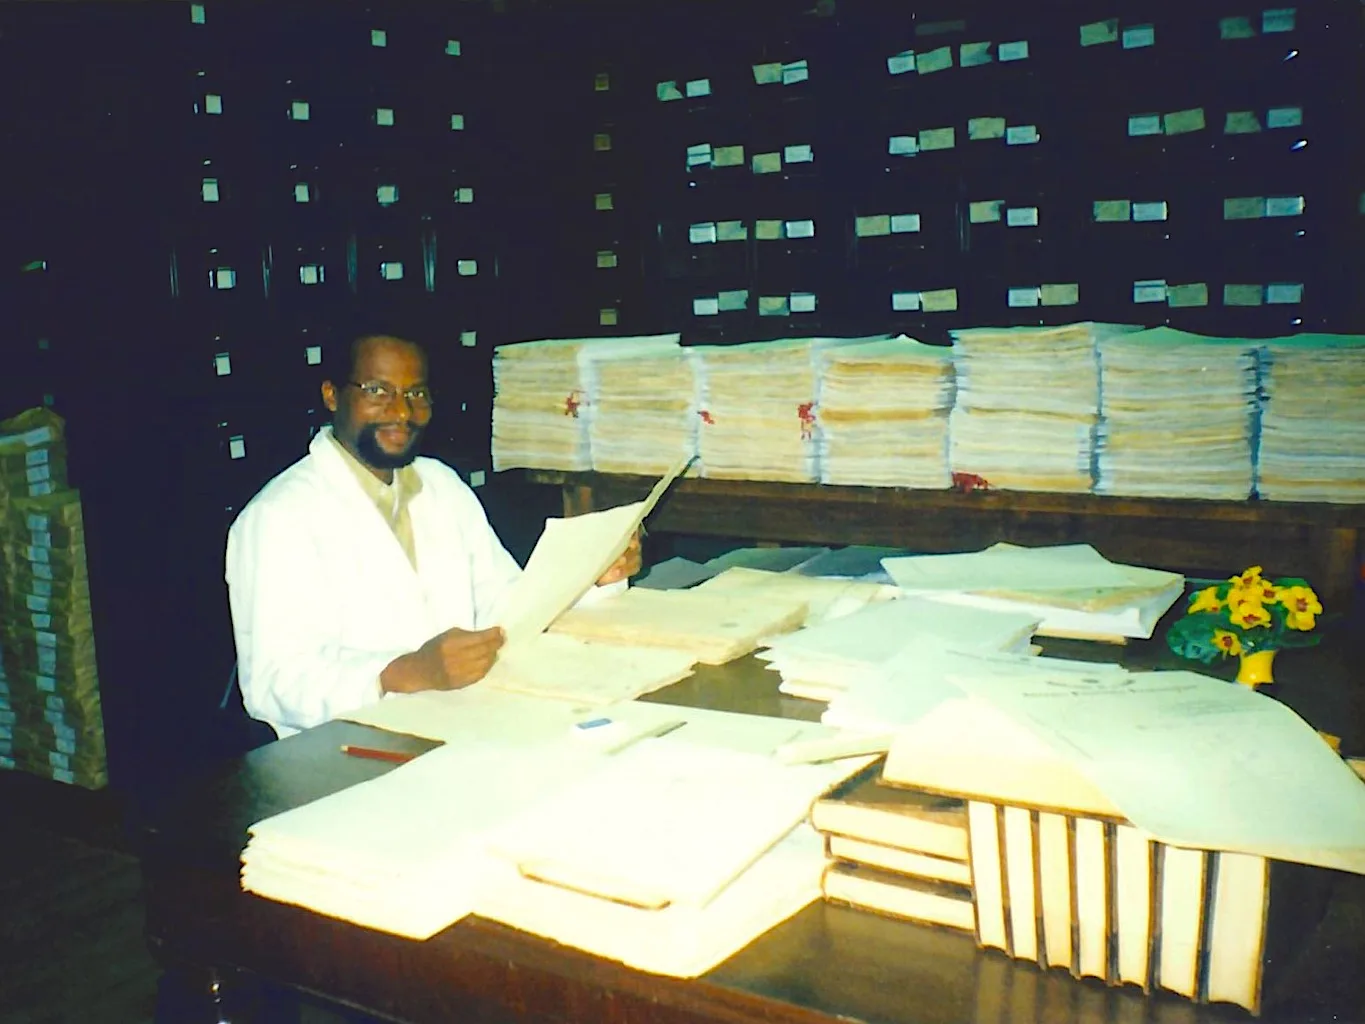 Um homem negro de óculos e cavanhaque, vestido de avental branco, segura documento sobre mesa repleta de outros documentos, ao fundo gaveteiros de madeira escura coom adesivos brancos